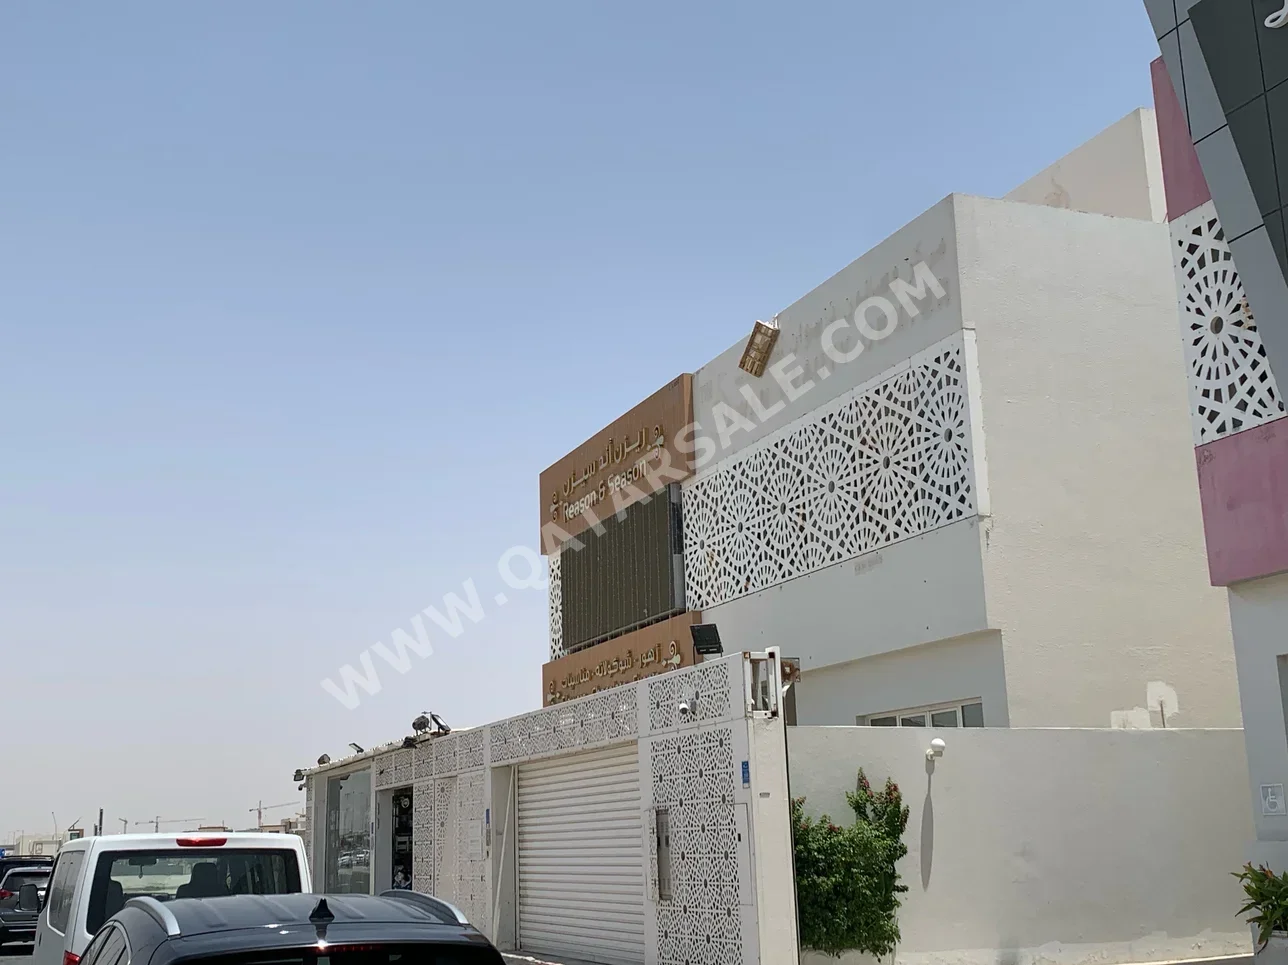 Commercial  - Semi Furnished  - Al Daayen  - Al Khisah  - 5 Bedrooms